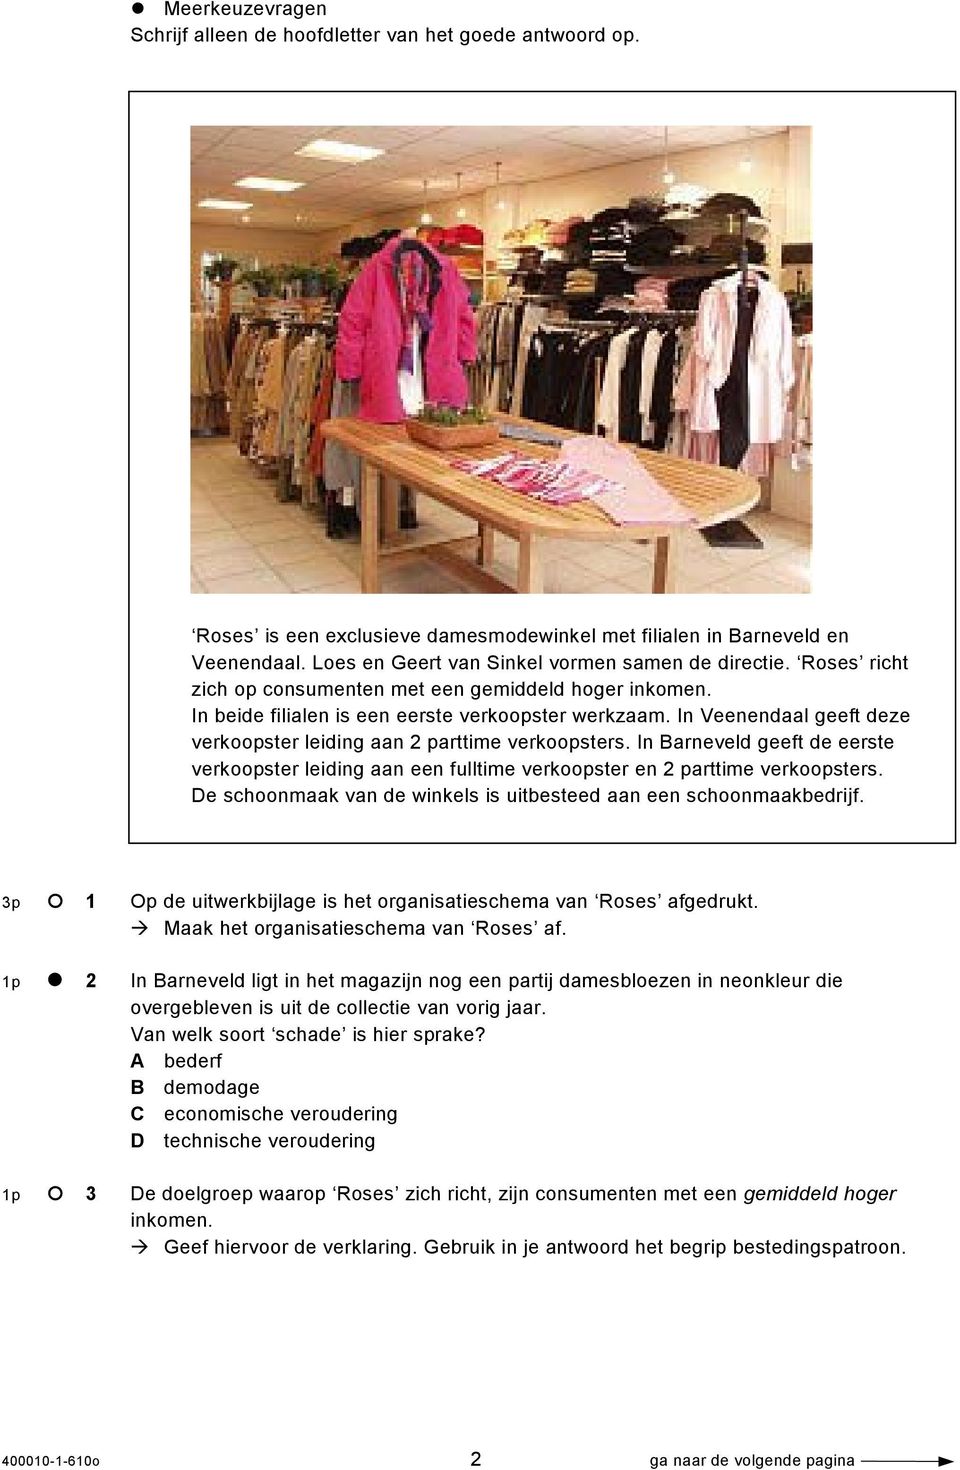 In Veenendaal geeft deze verkoopster leiding aan 2 parttime verkoopsters. In Barneveld geeft de eerste verkoopster leiding aan een fulltime verkoopster en 2 parttime verkoopsters.